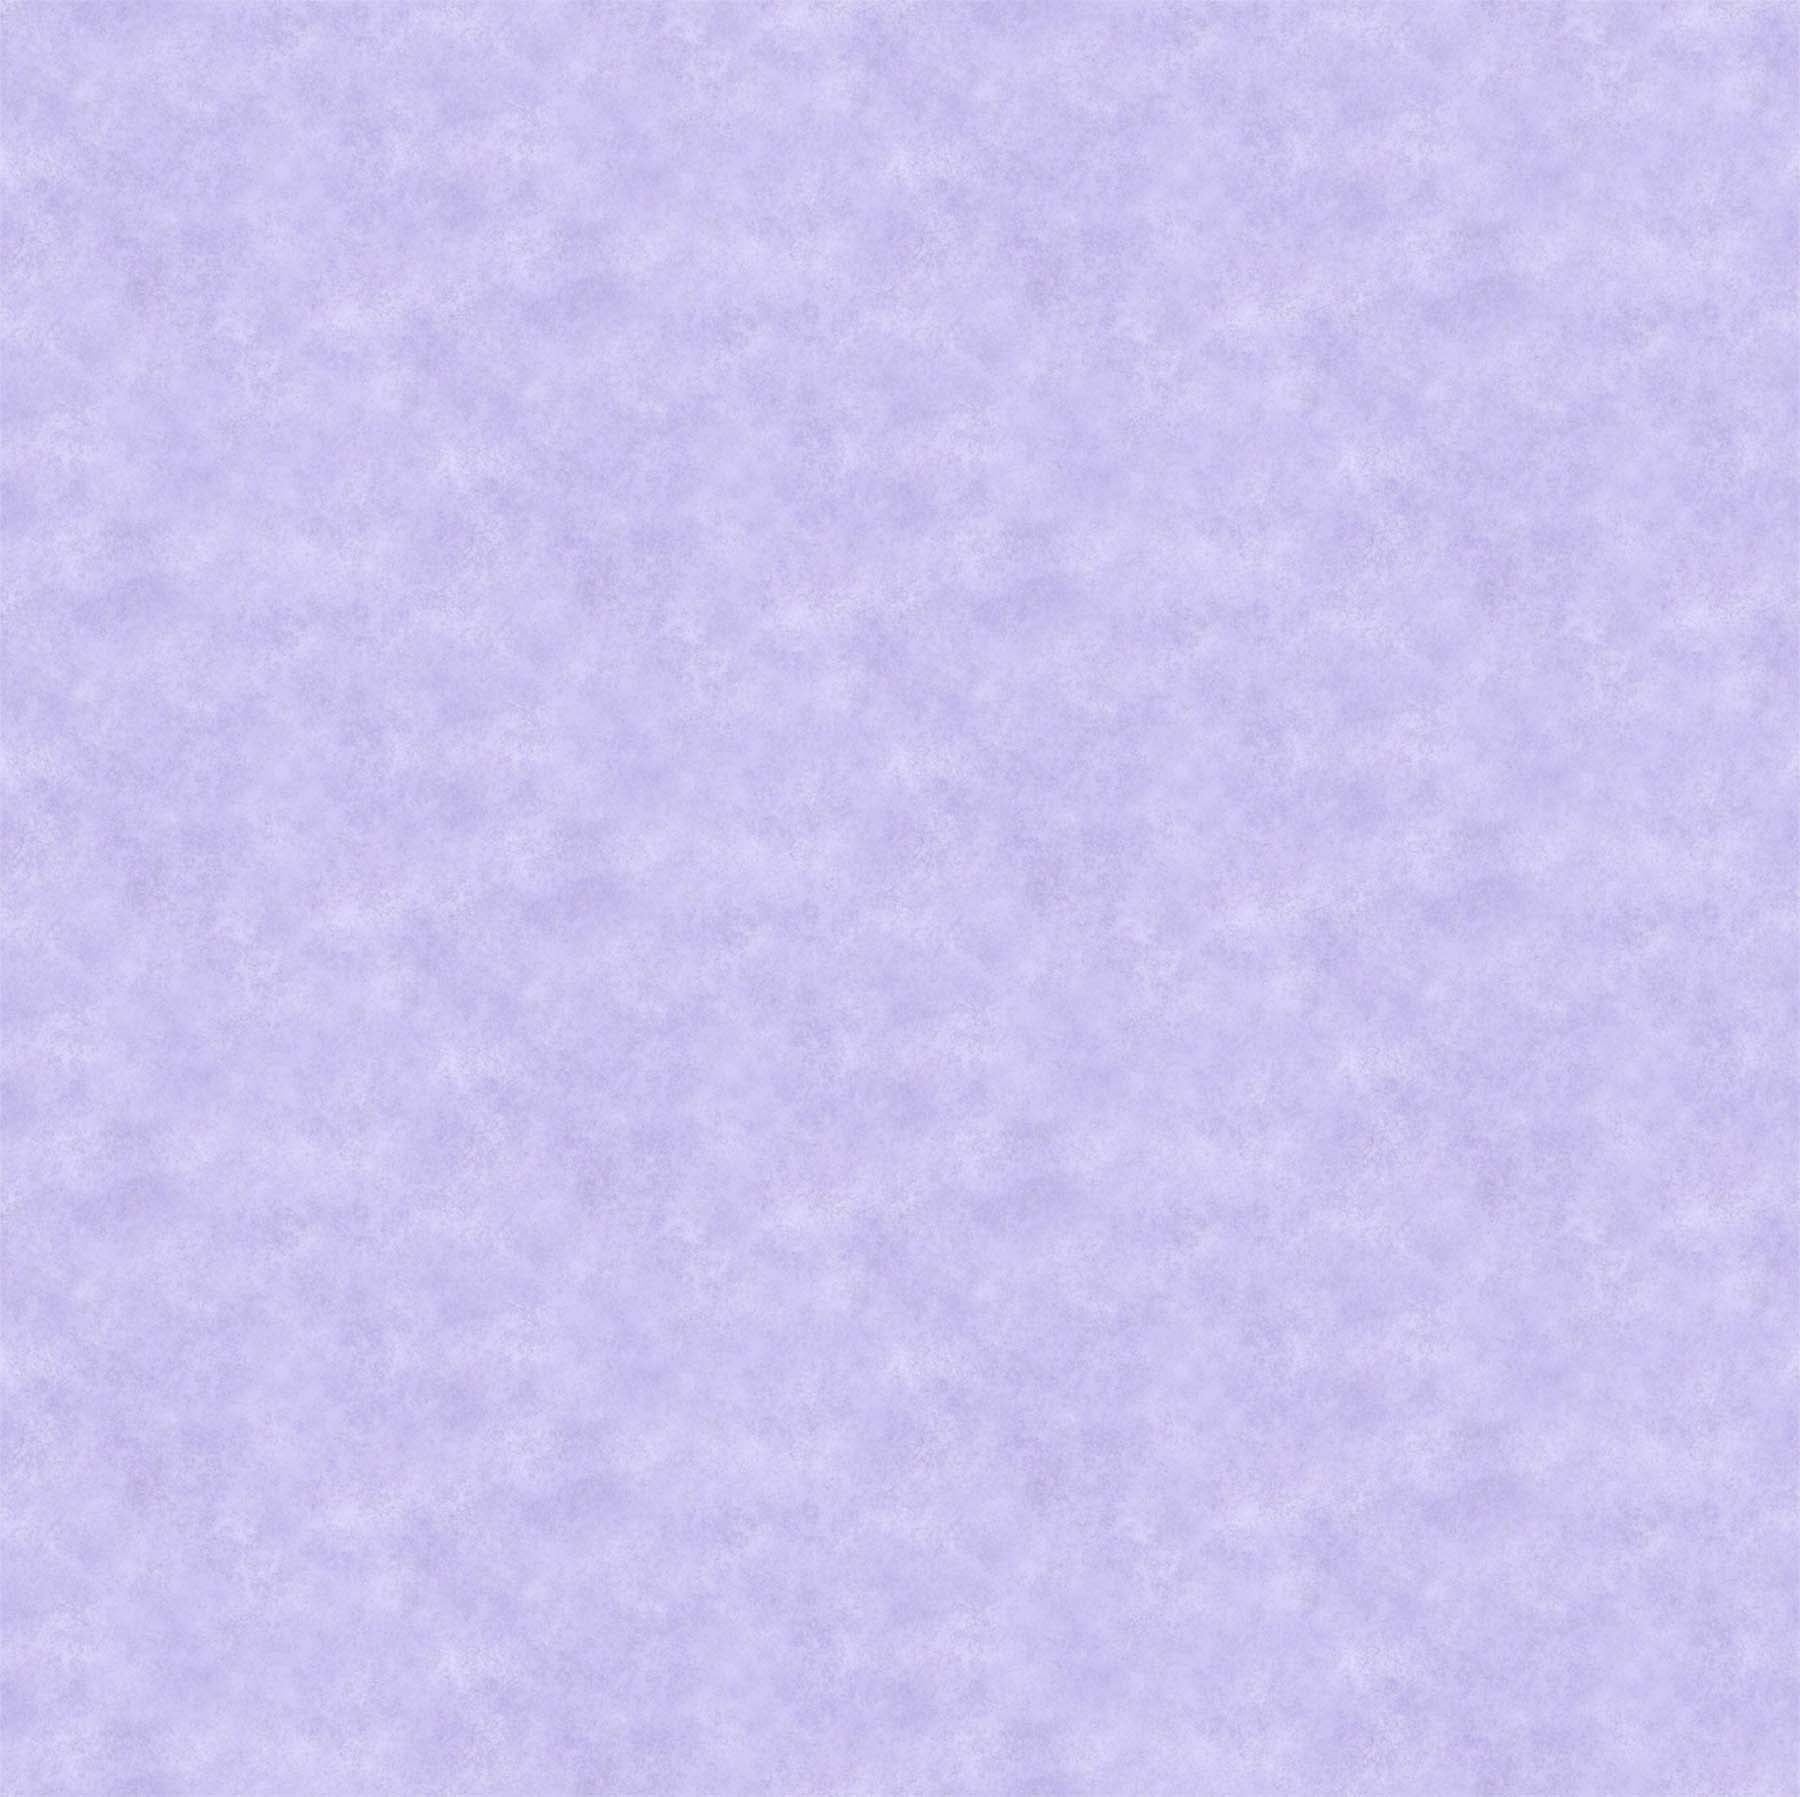 Shimmer Radiance - Lavender